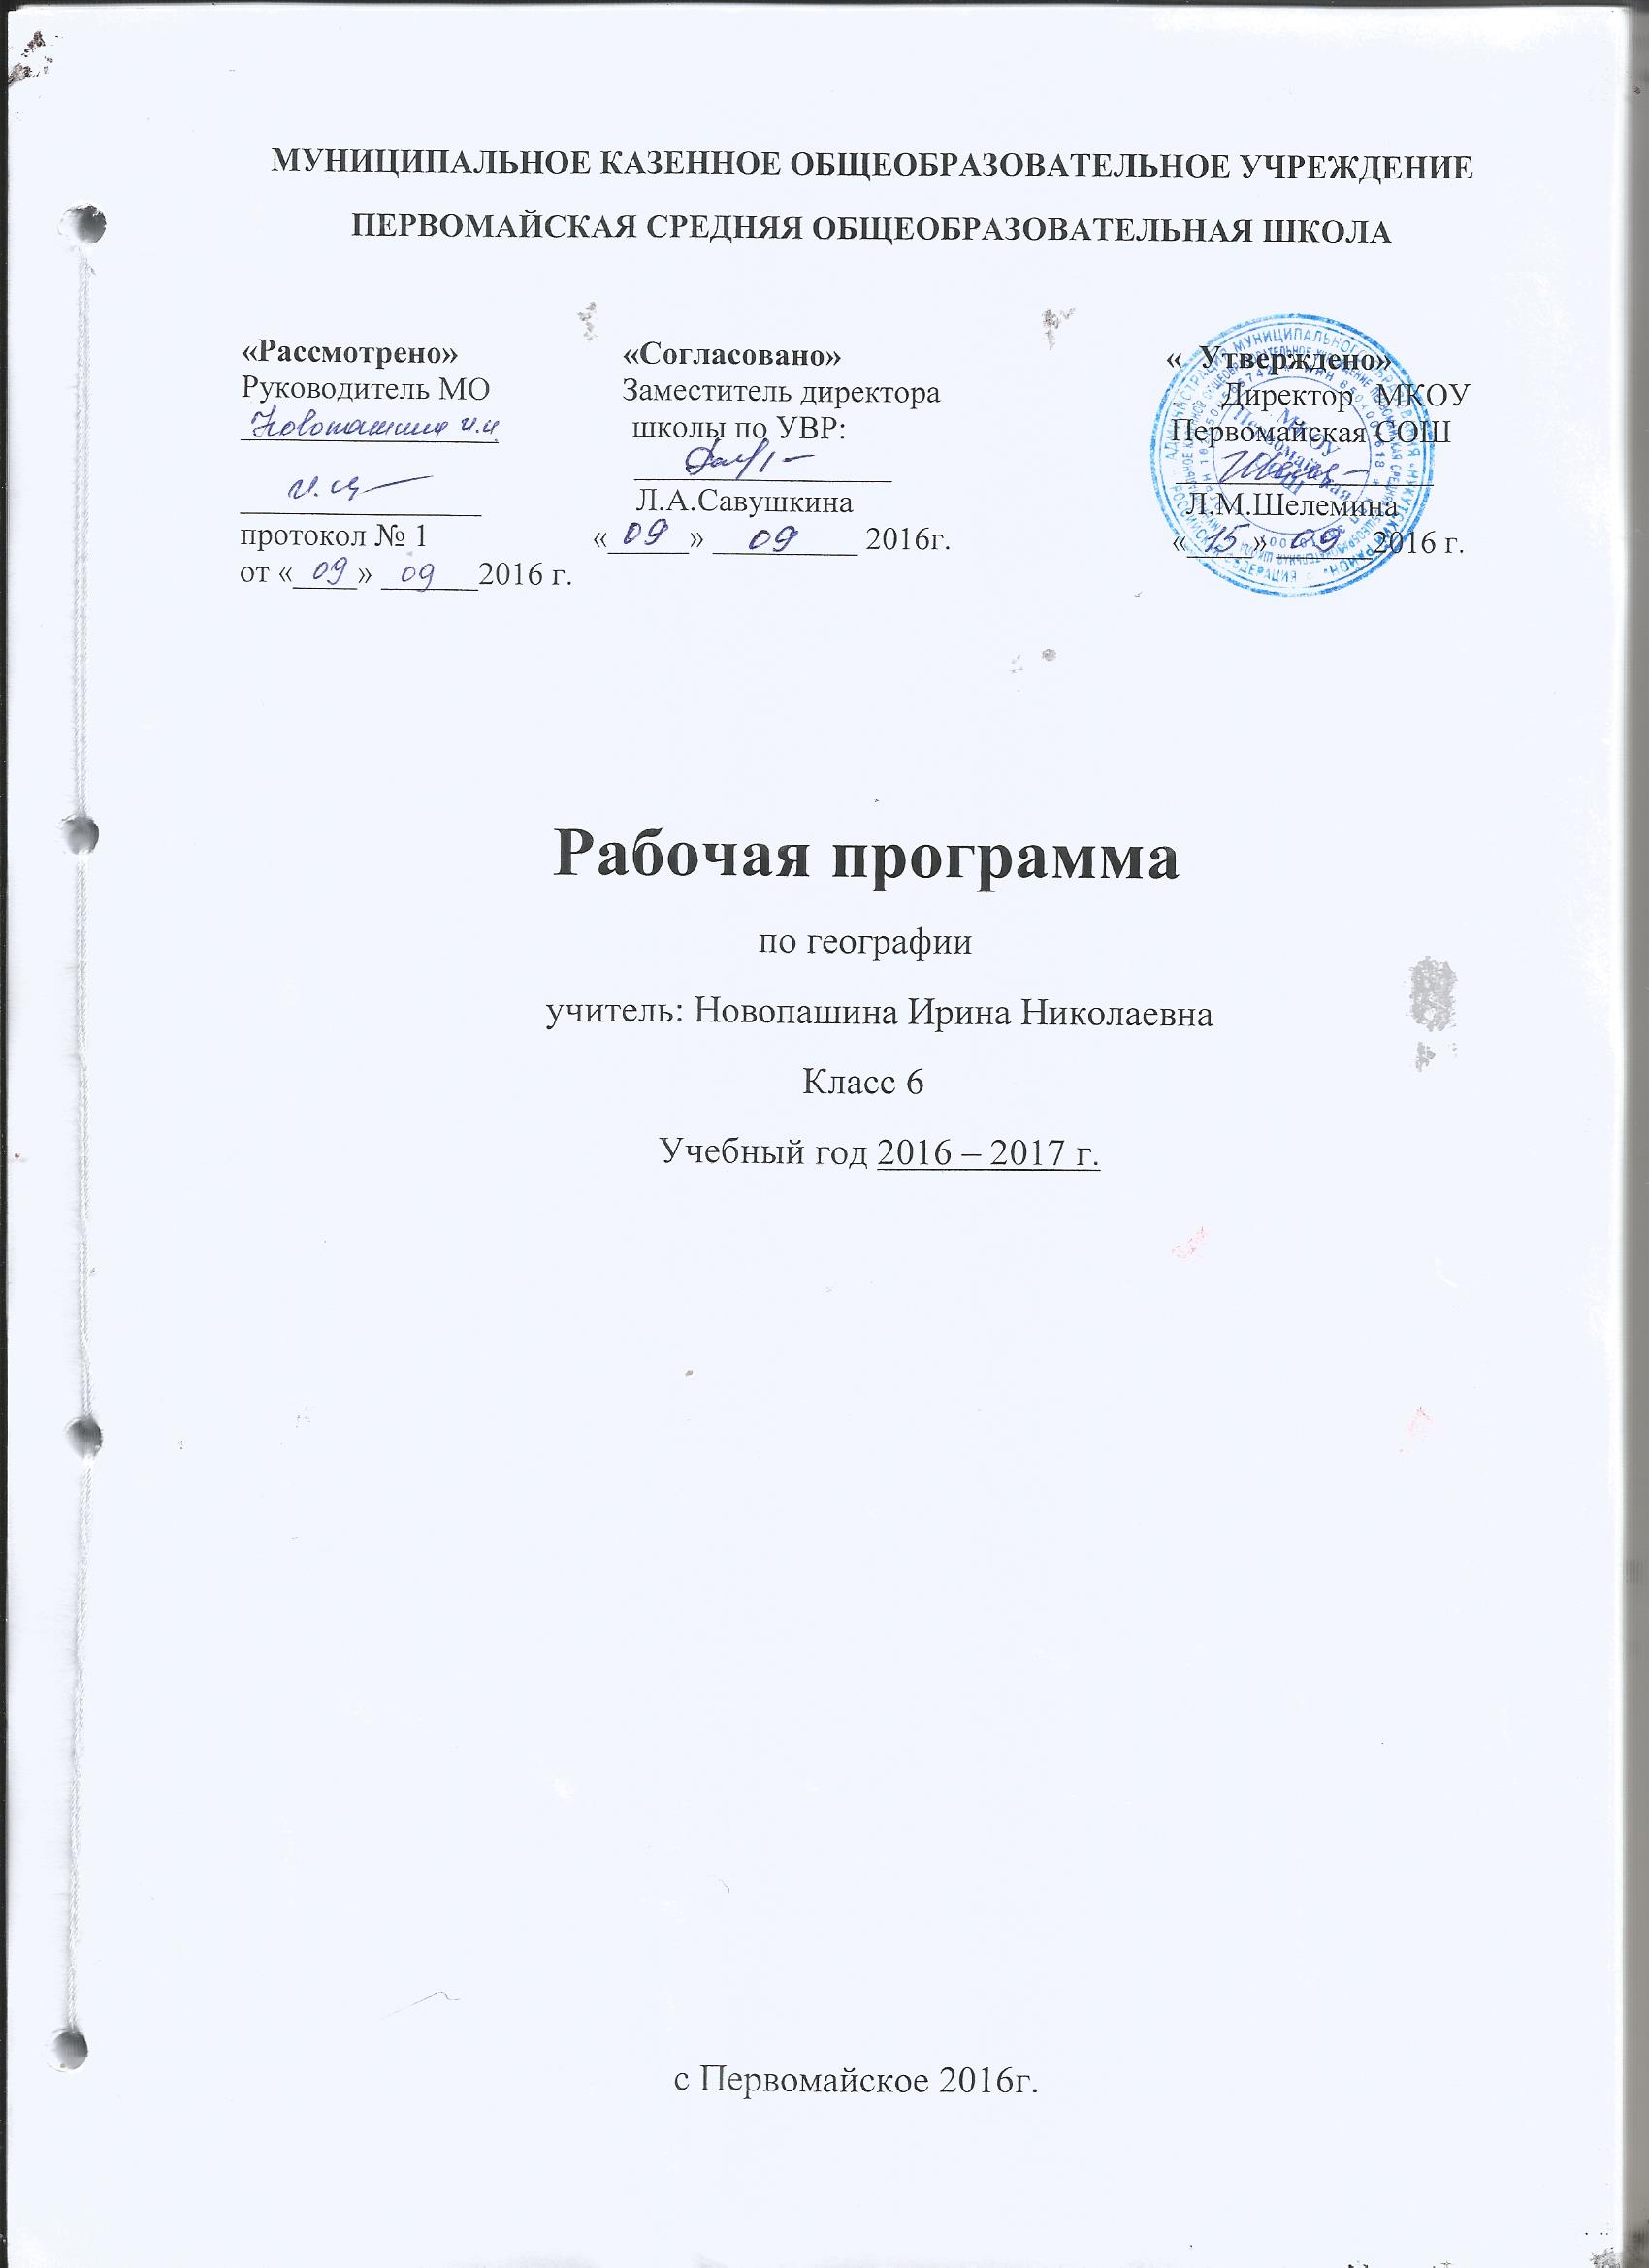 Рабочая программа по географии6 класс ФГОС по учебнику ГерасимоваТП с пояснительной запиской составленая 1 2016 году